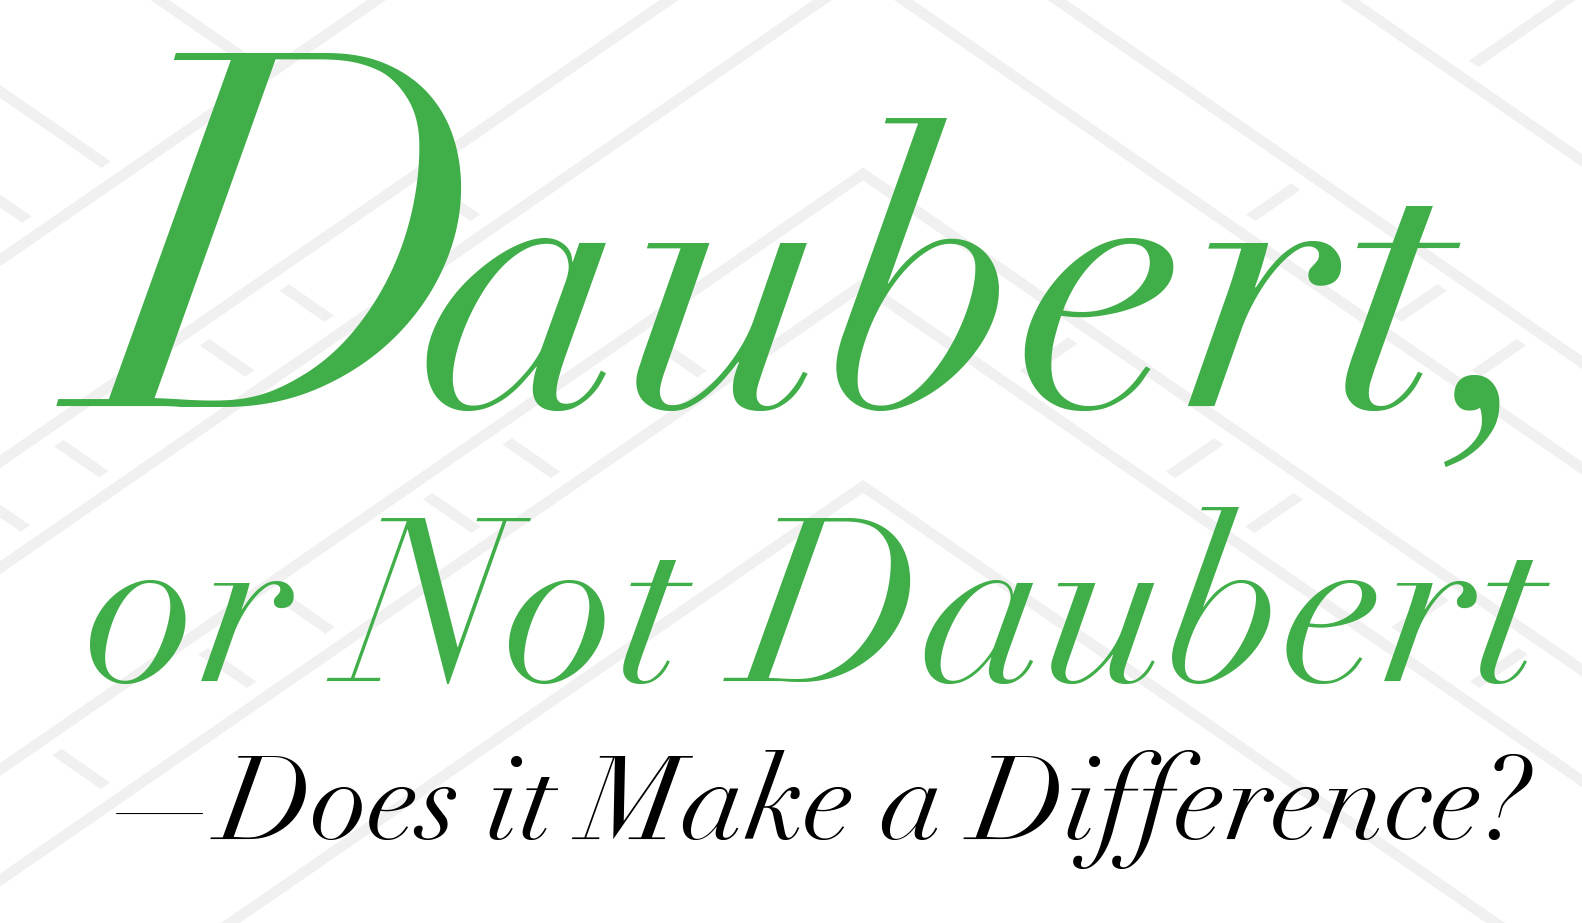 Testimony Daubert or Not Daubert